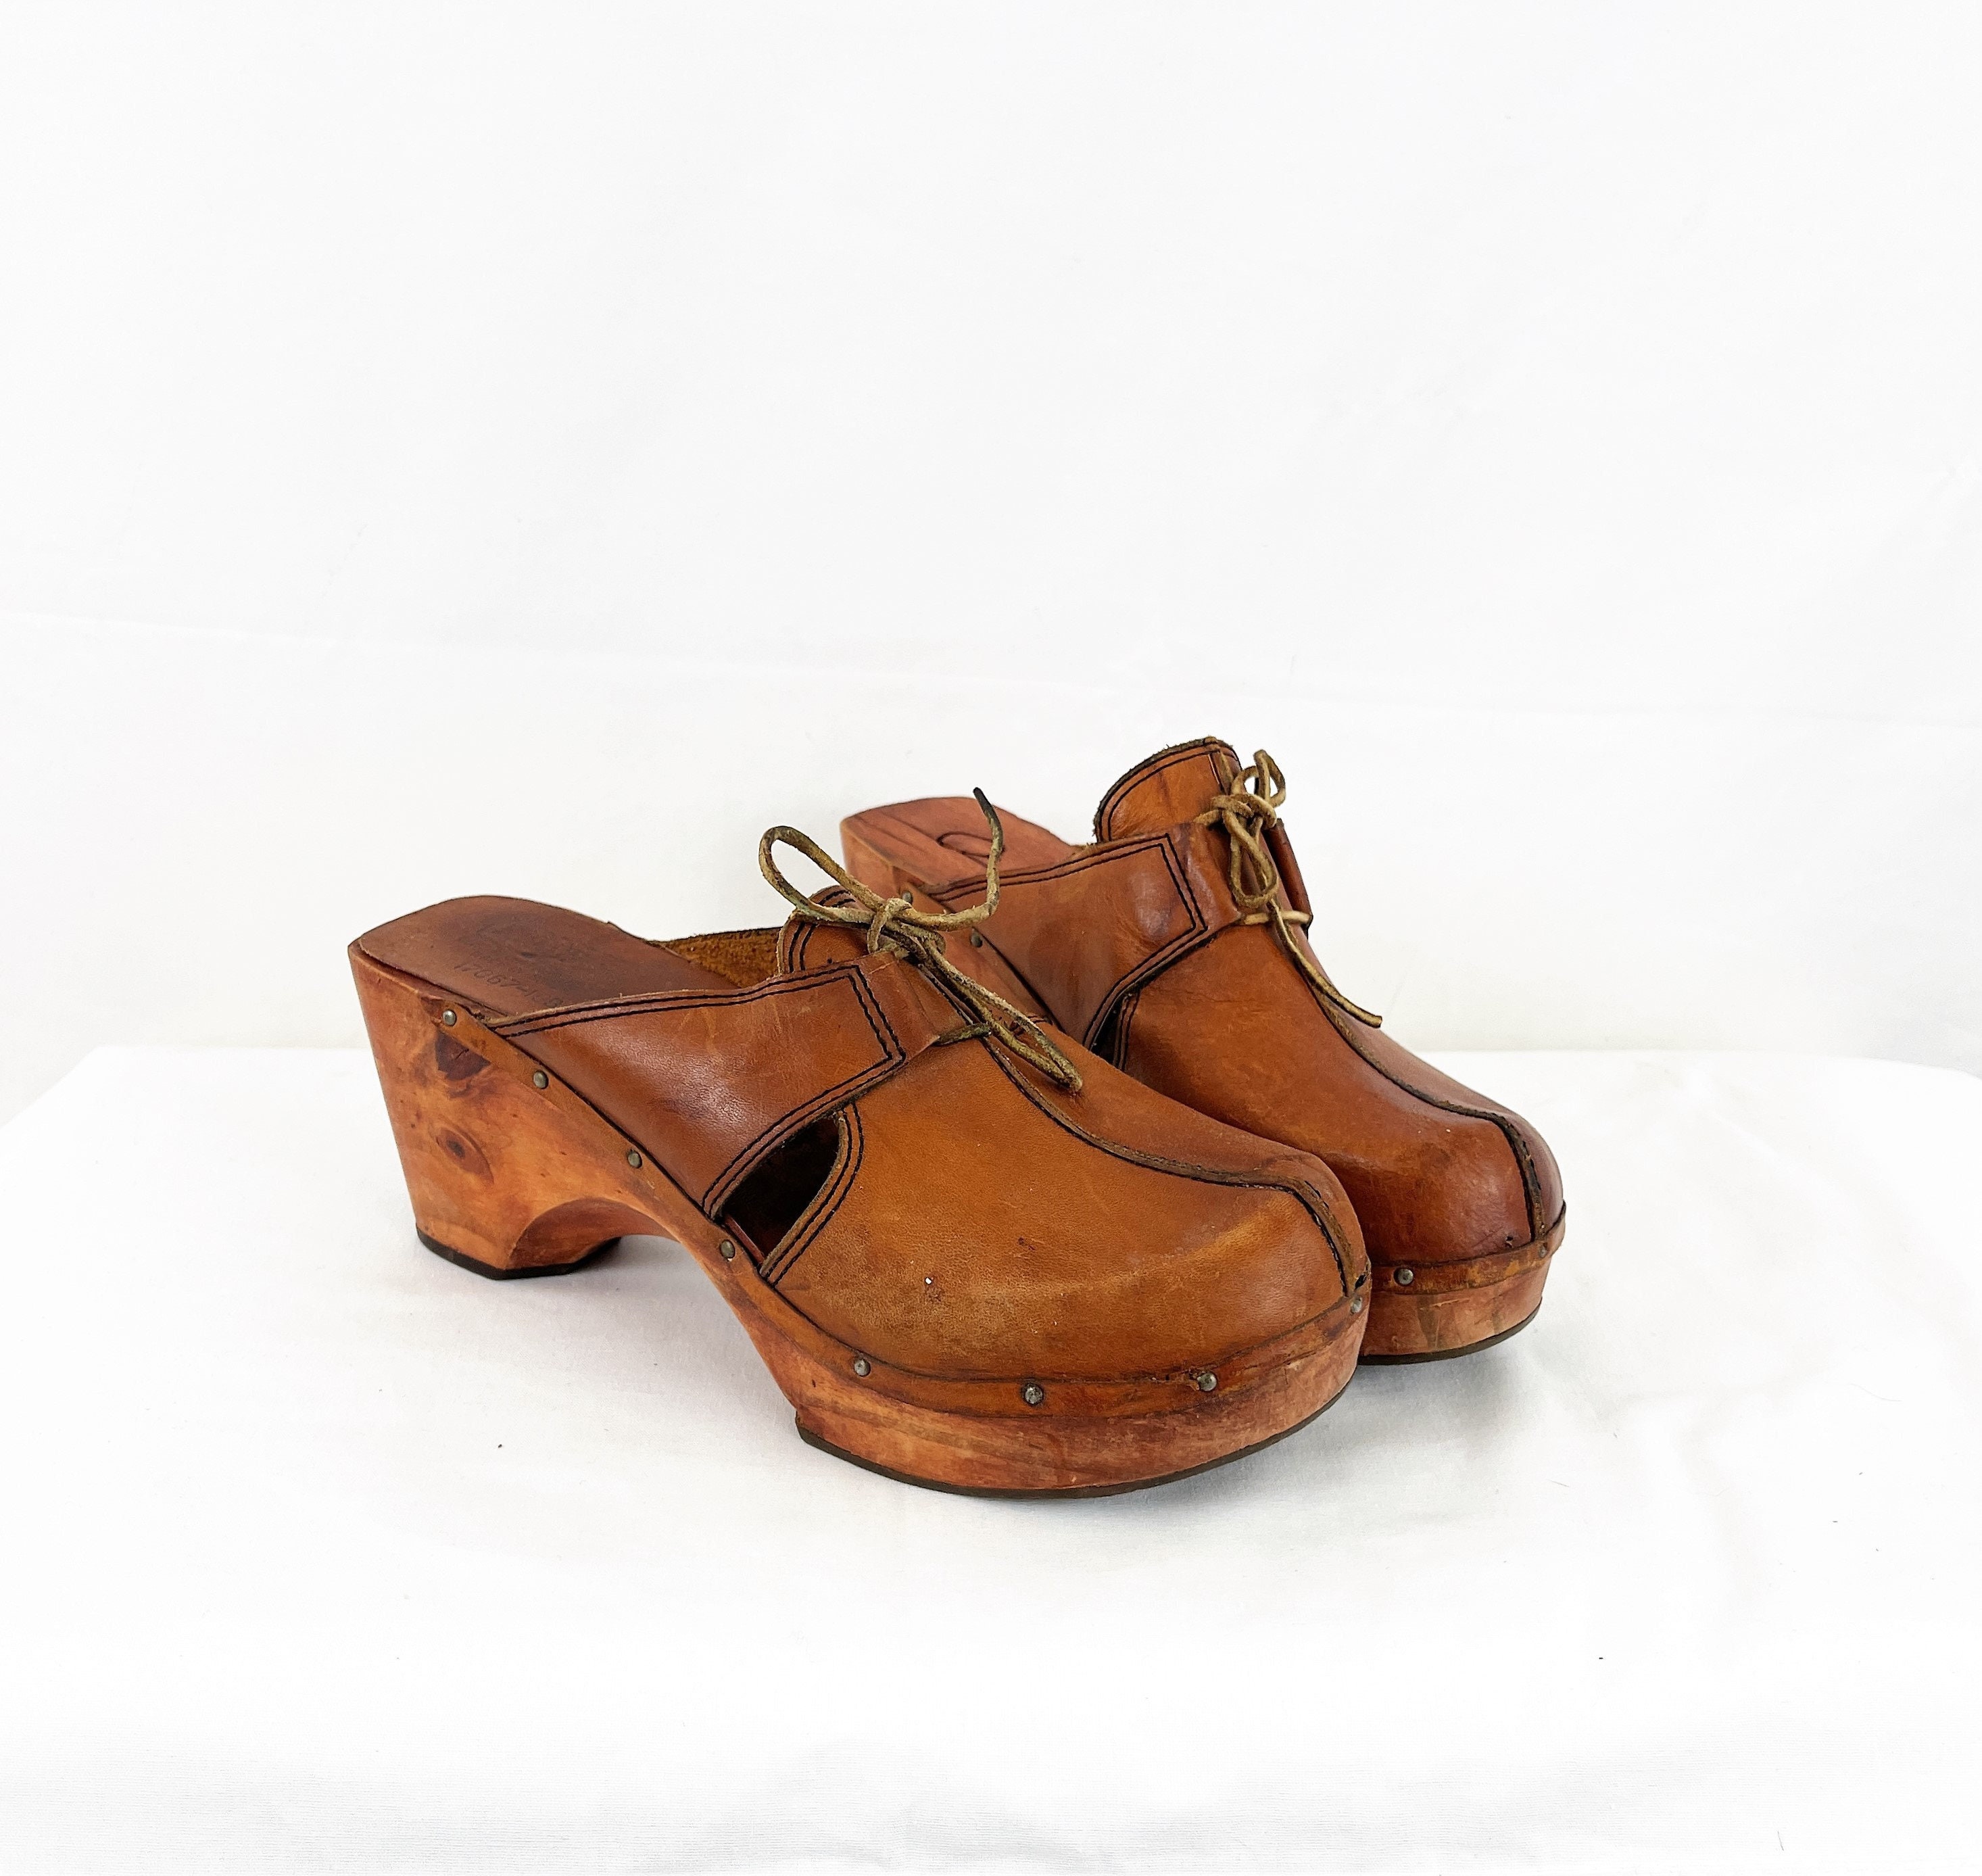 Zapatos Zapatos para mujer Zuecos y chinelas Vintage ante marrón peep puntera tacón correa 90s mulas 